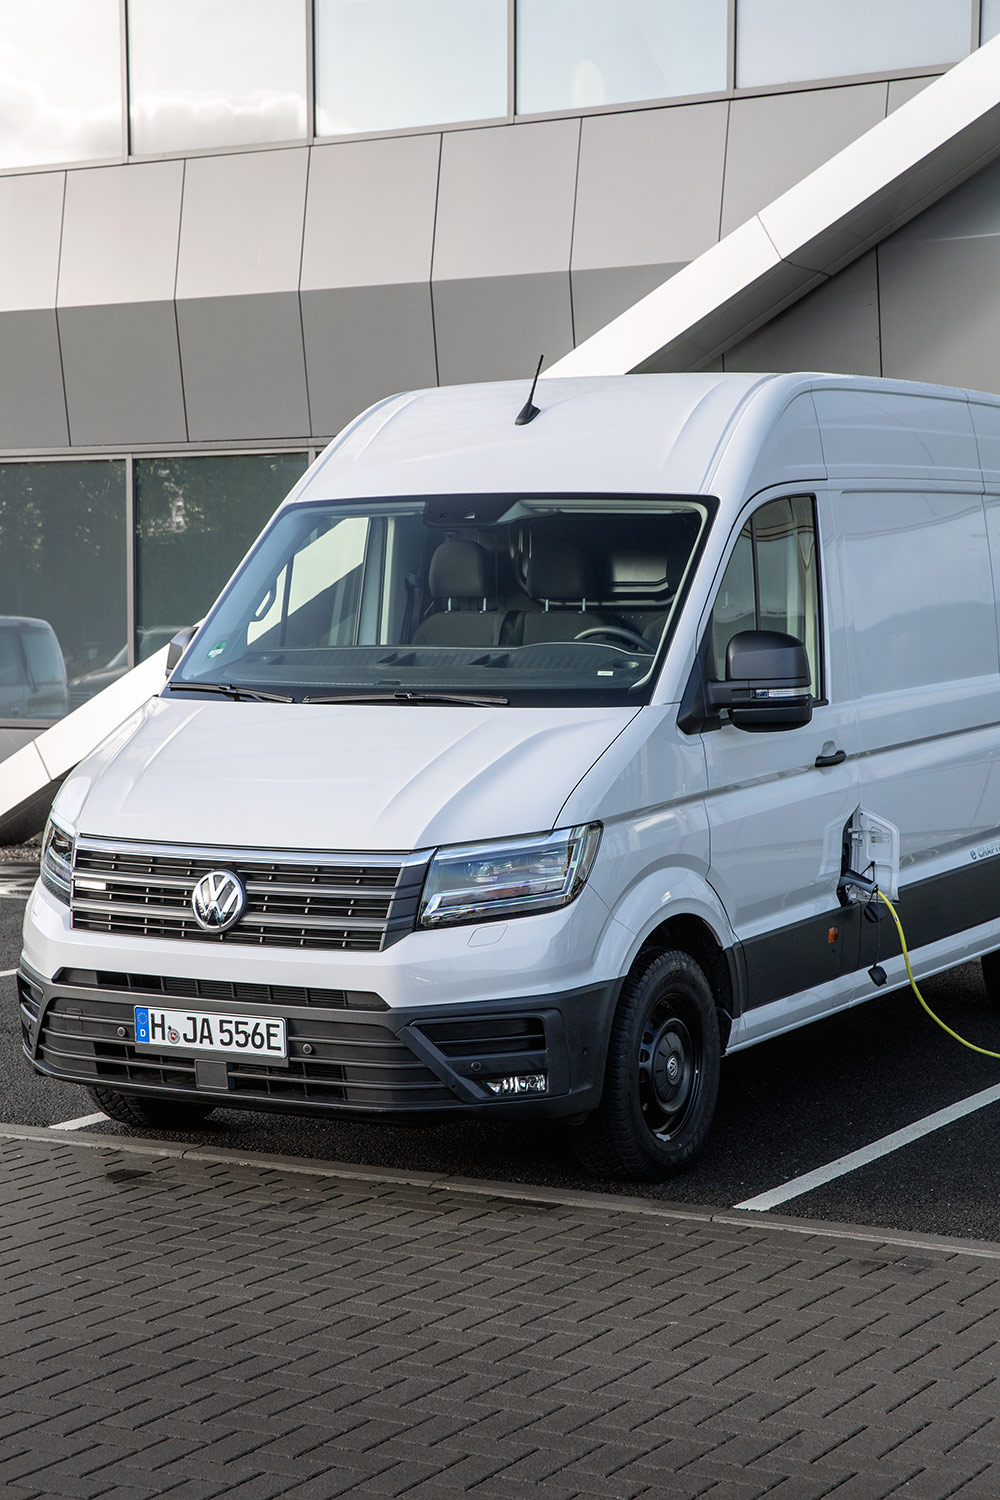 Volkswagen e-Crafter Van eléctrica llega a México pronto - color blanco en estación de carga frente del vehículo